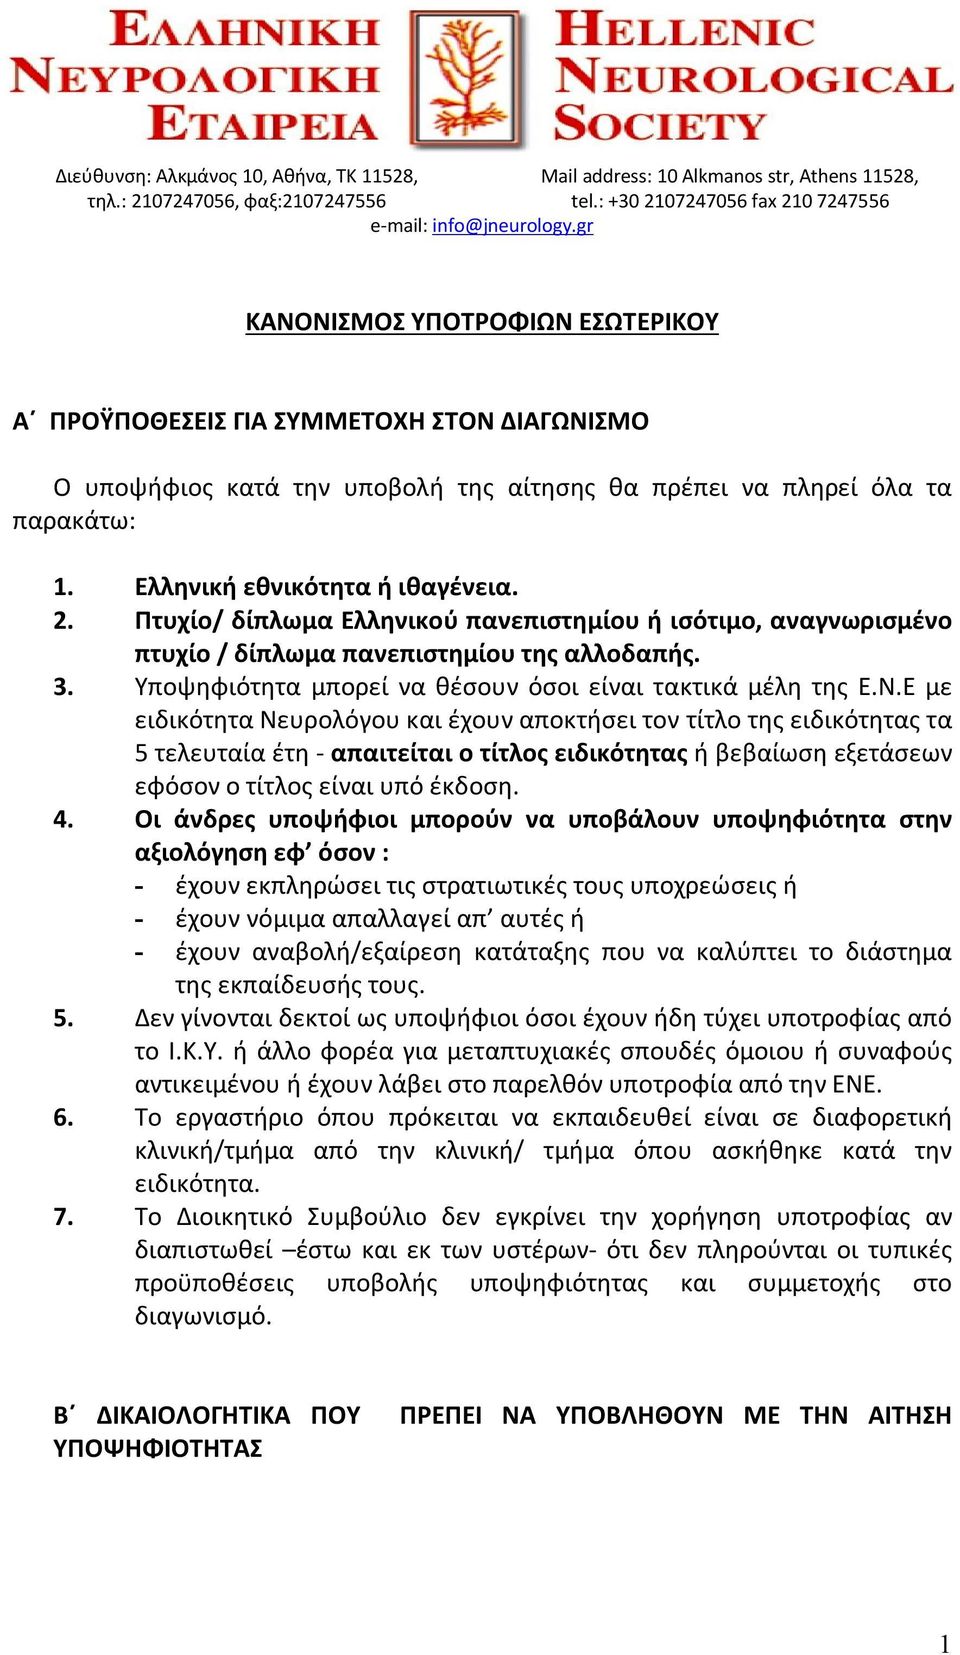 Πτυχίο/ δίπλωμα Ελληνικού πανεπιστημίου ή ισότιμο, αναγνωρισμένο πτυχίο / δίπλωμα πανεπιστημίου της αλλοδαπής. 3. Υποψηφιότητα μπορεί να θέσουν όσοι είναι τακτικά μέλη της Ε.Ν.